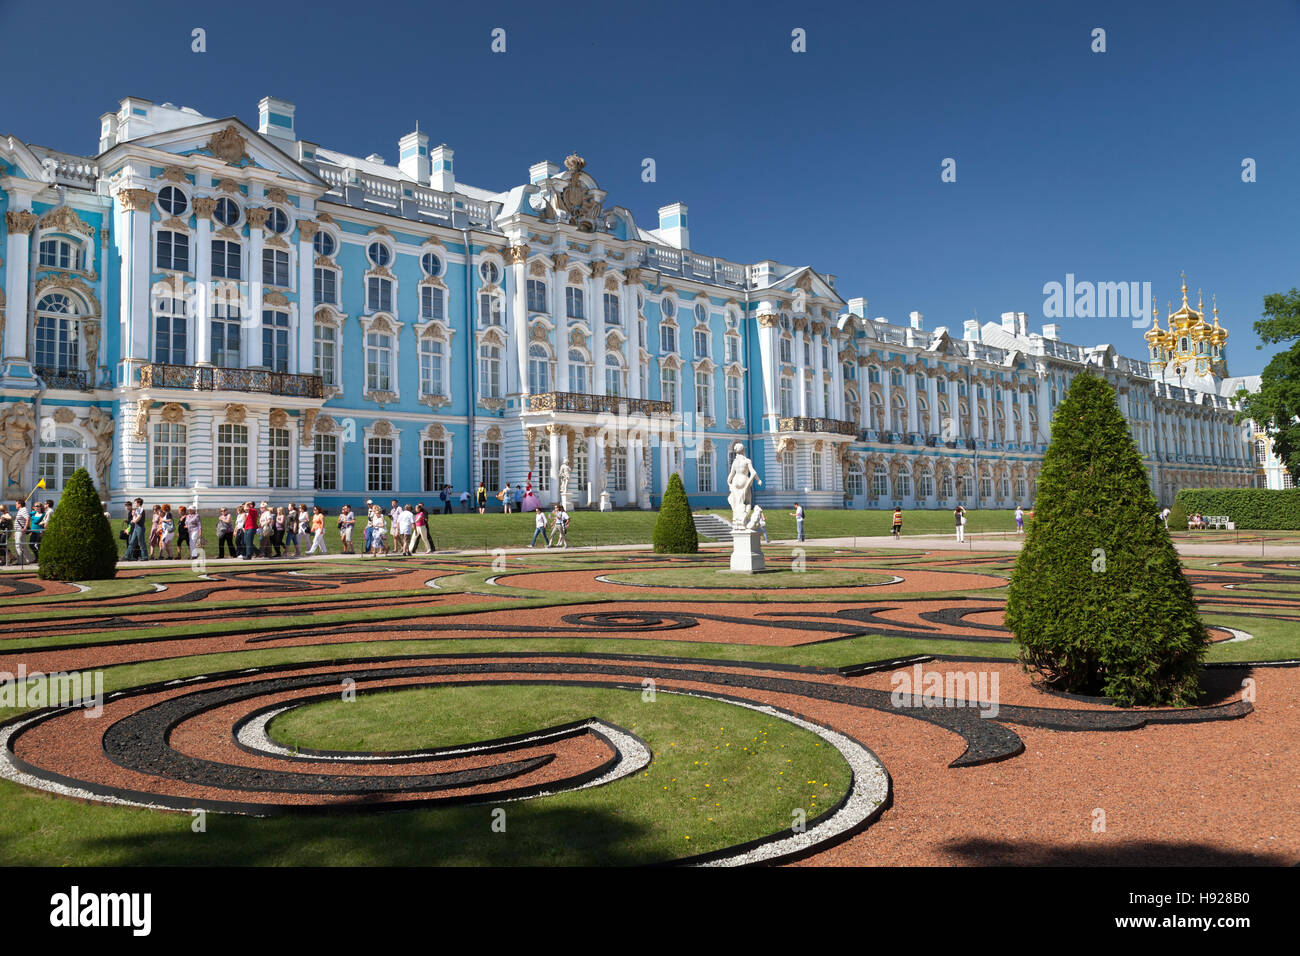 Die aufwendigen Katharinenpalast befindet sich in der Stadt Puschkin bei St. Petersburg in Russland. Stockfoto